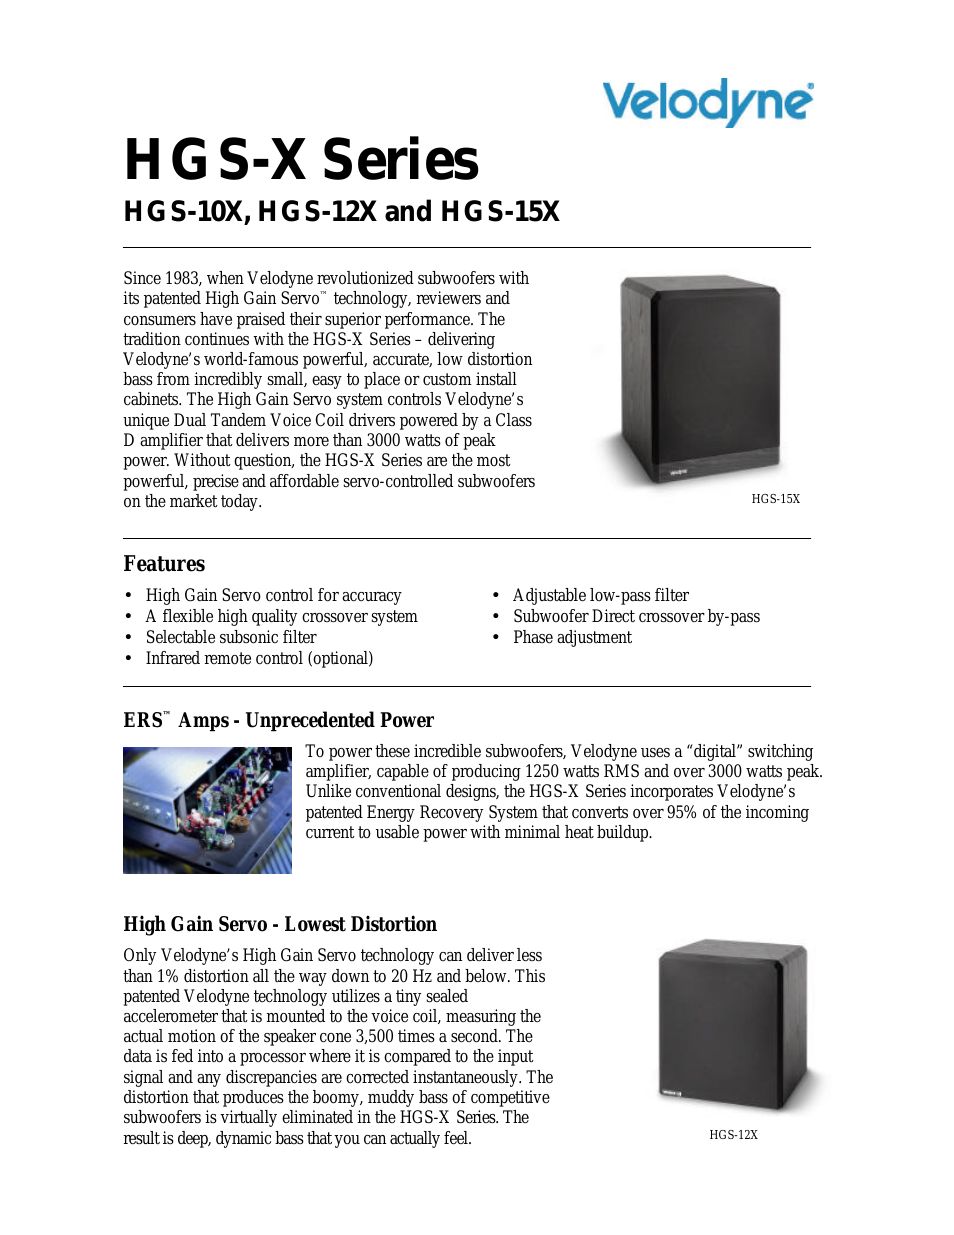 HGS-X SERIES HGS-12X